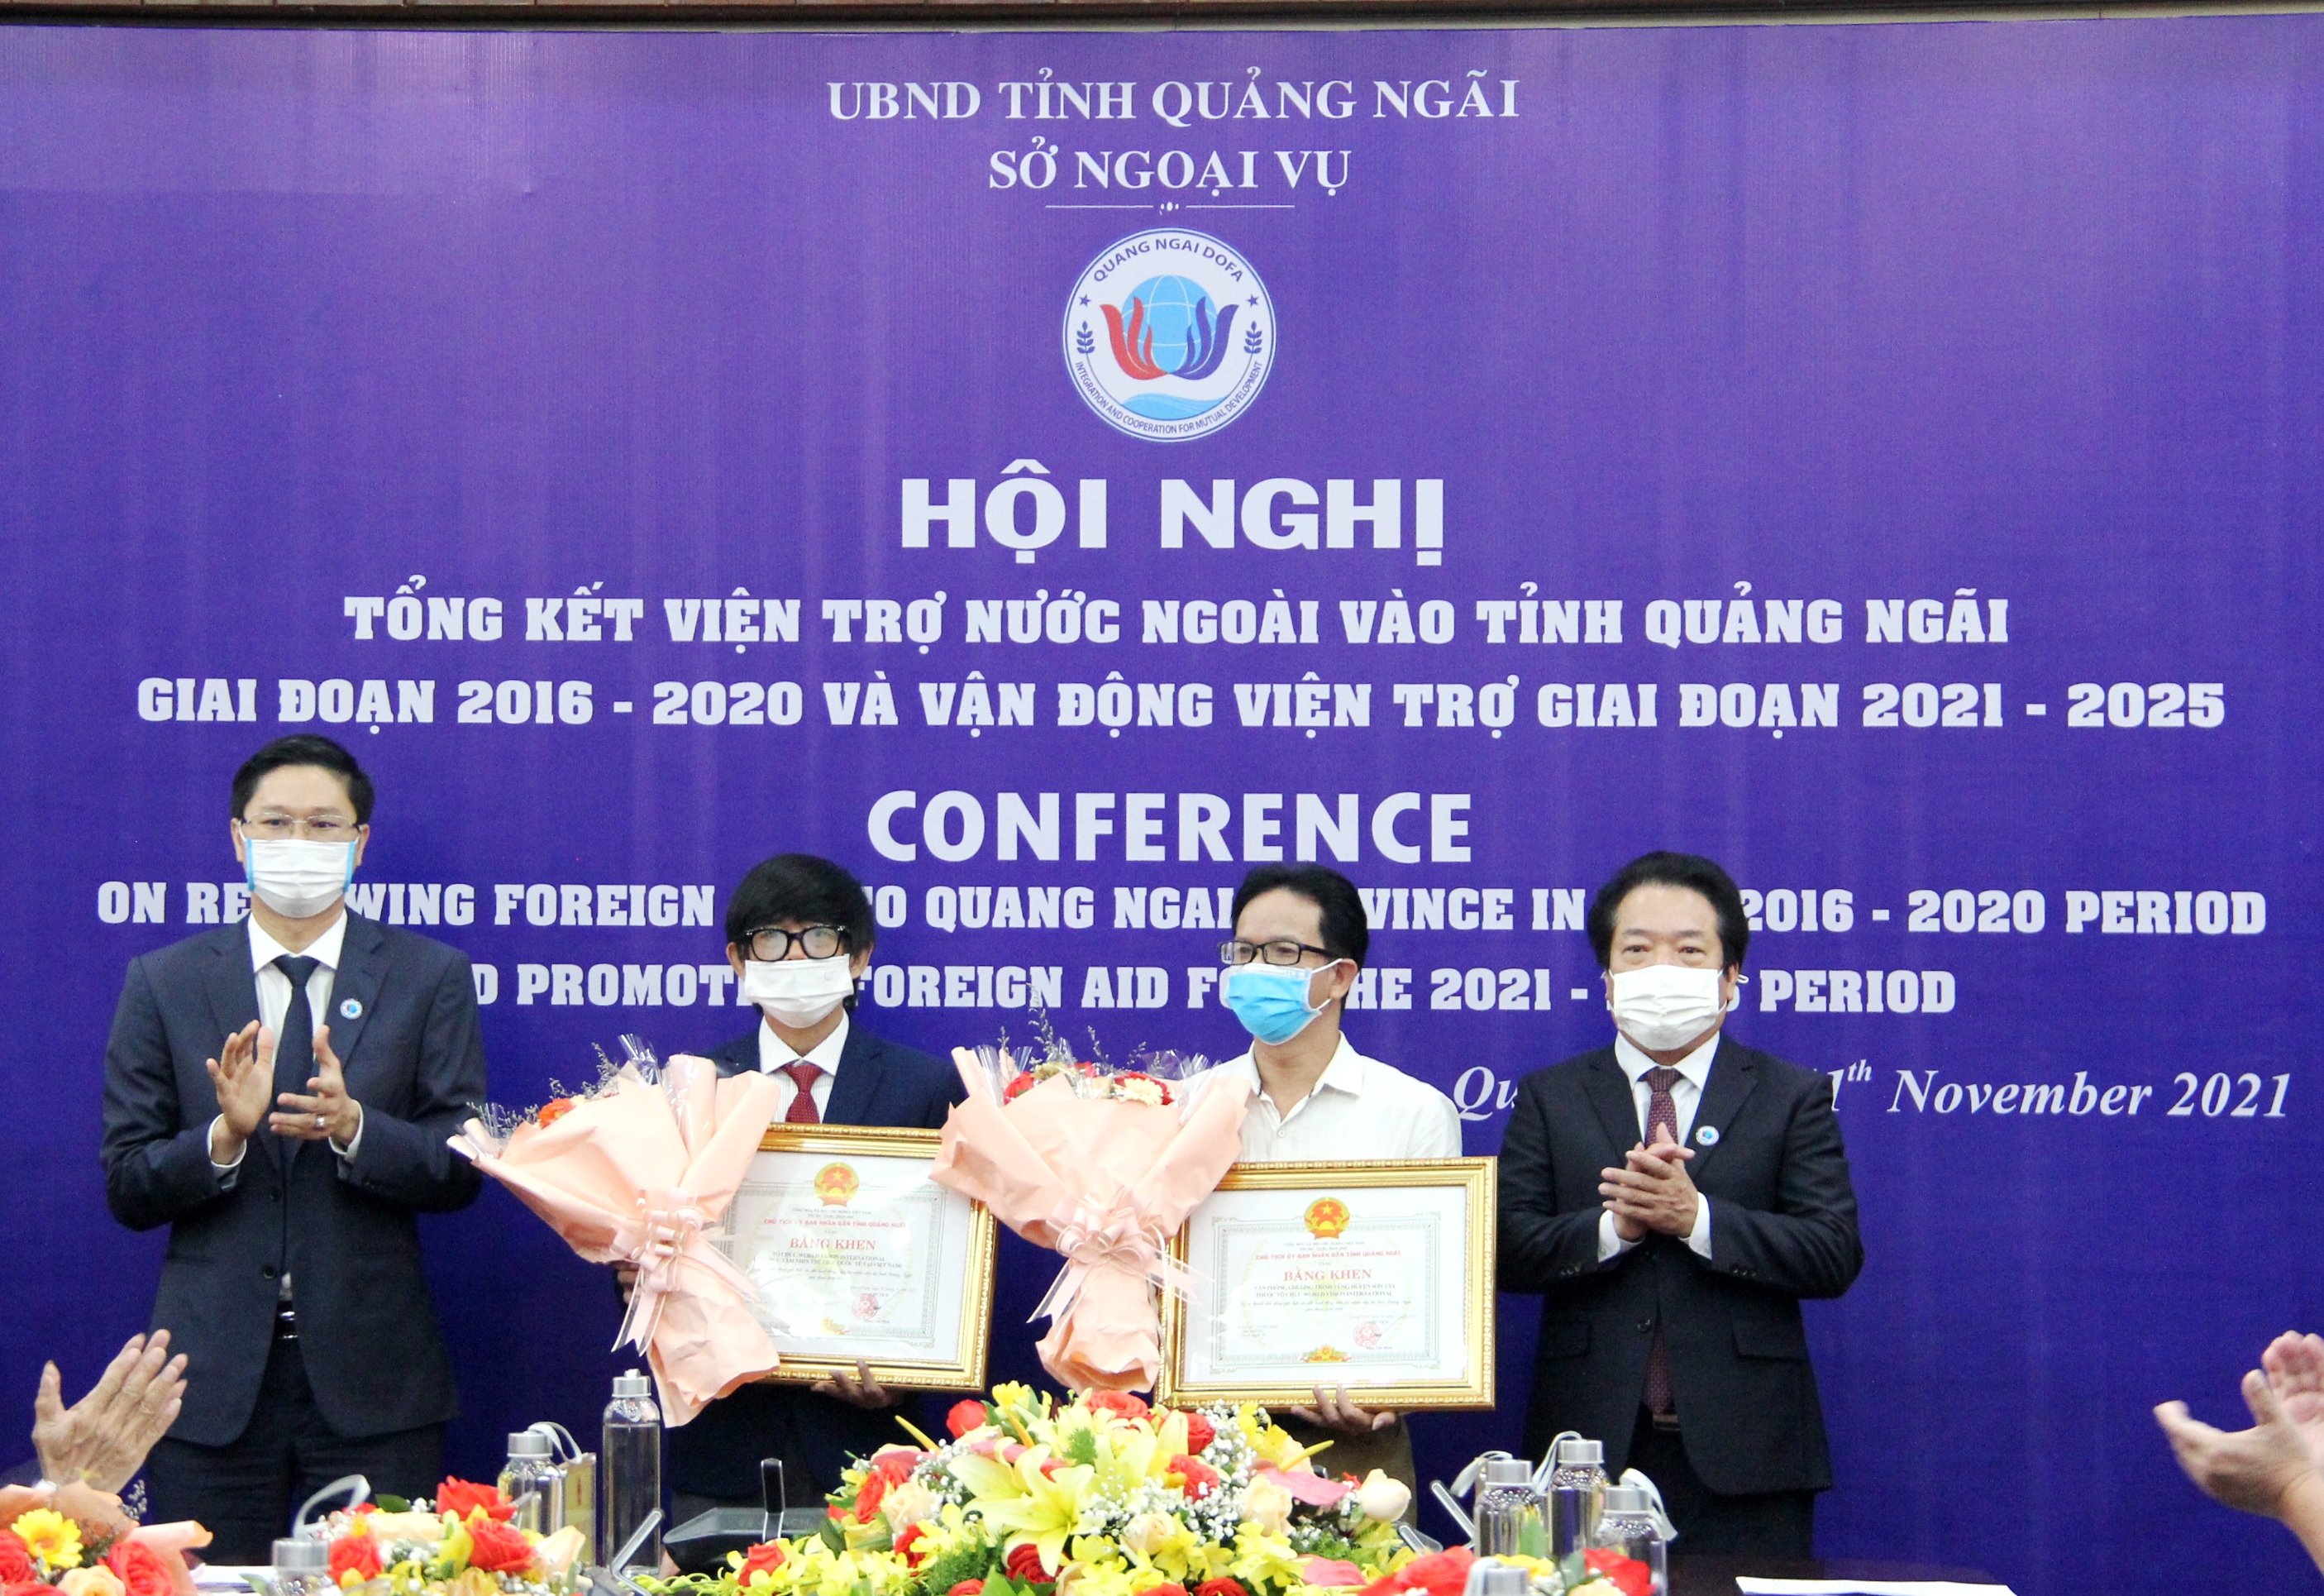 Phó Chủ tịch UBND tỉnh Võ Phiên và Giám đốc Sở Ngoại vụ Nguyễn Viết Vy trao Bằng khen và hoa cho đại diện Tổ chức Tầm nhìn Thế giới tại Việt Nam (WVI)